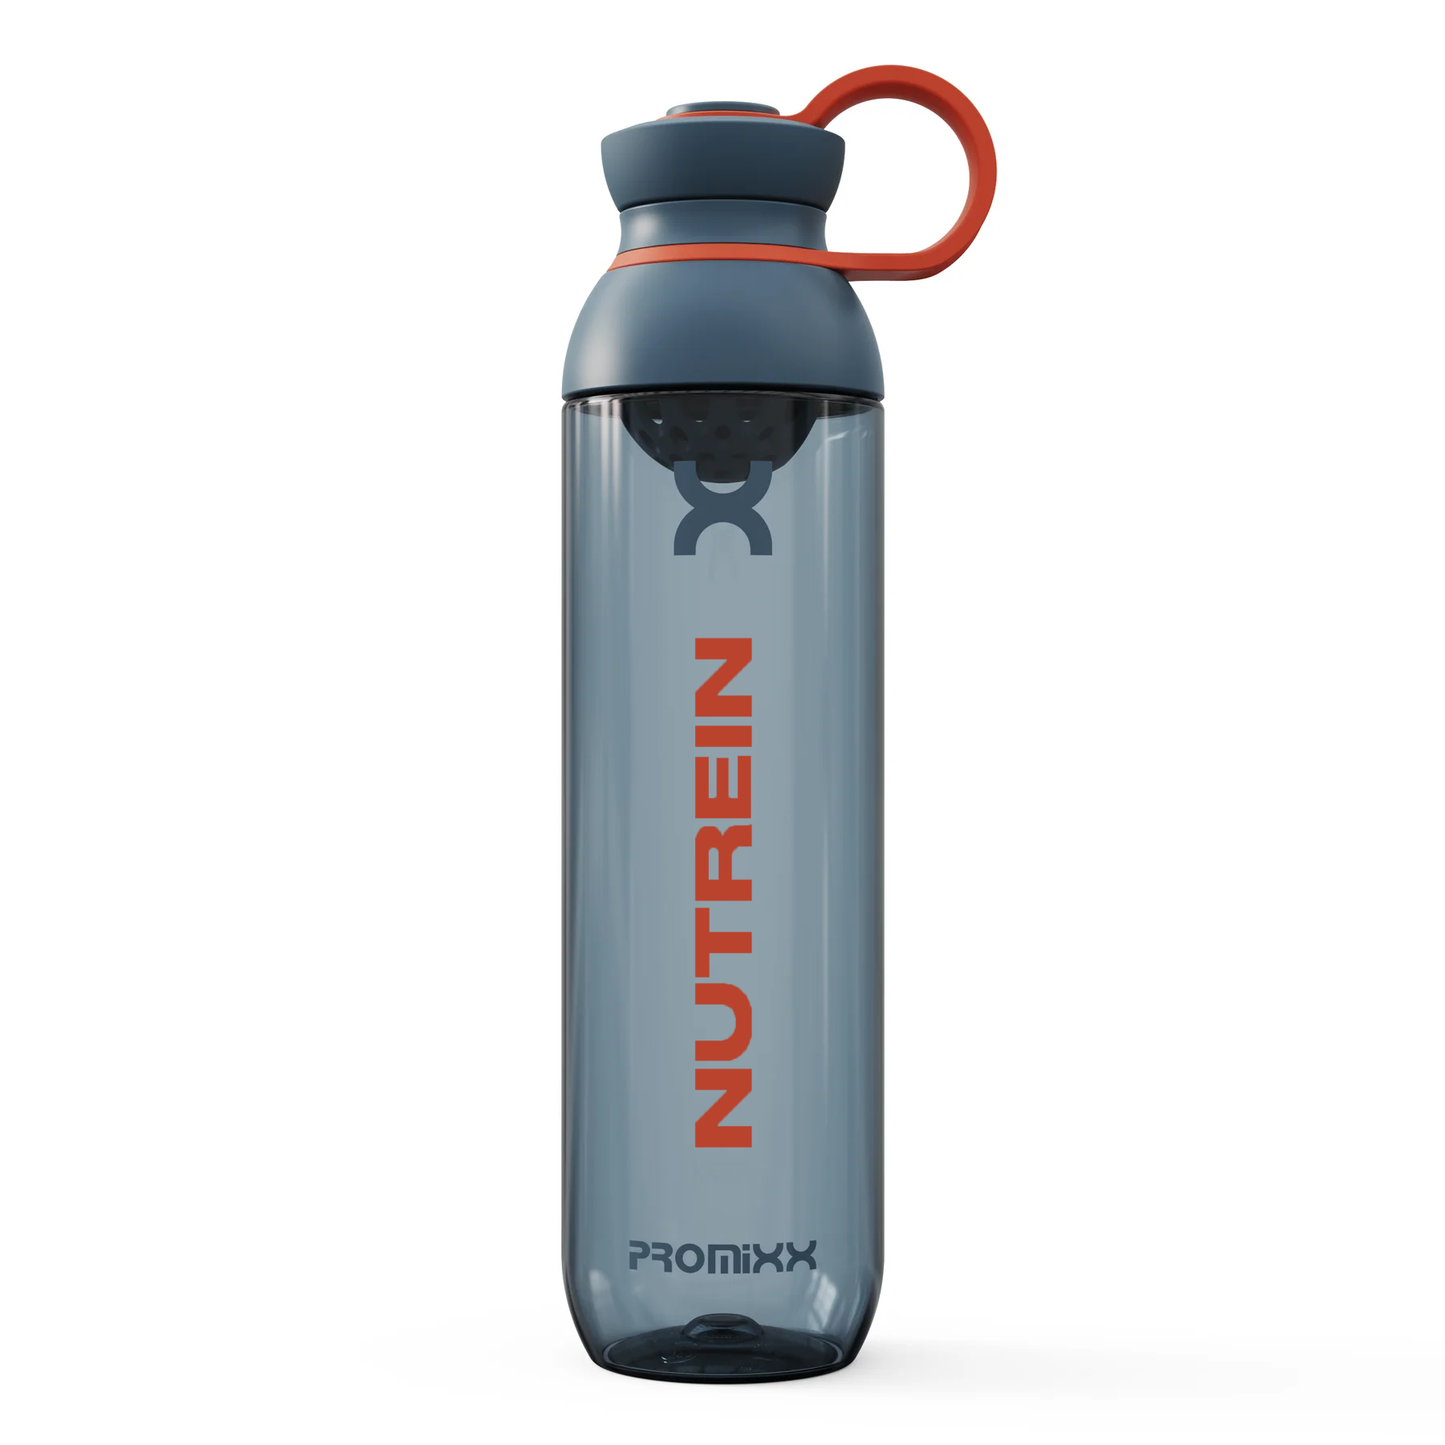 Nutrein x Promixx Limited Edition Hybrid Shaker Bottle